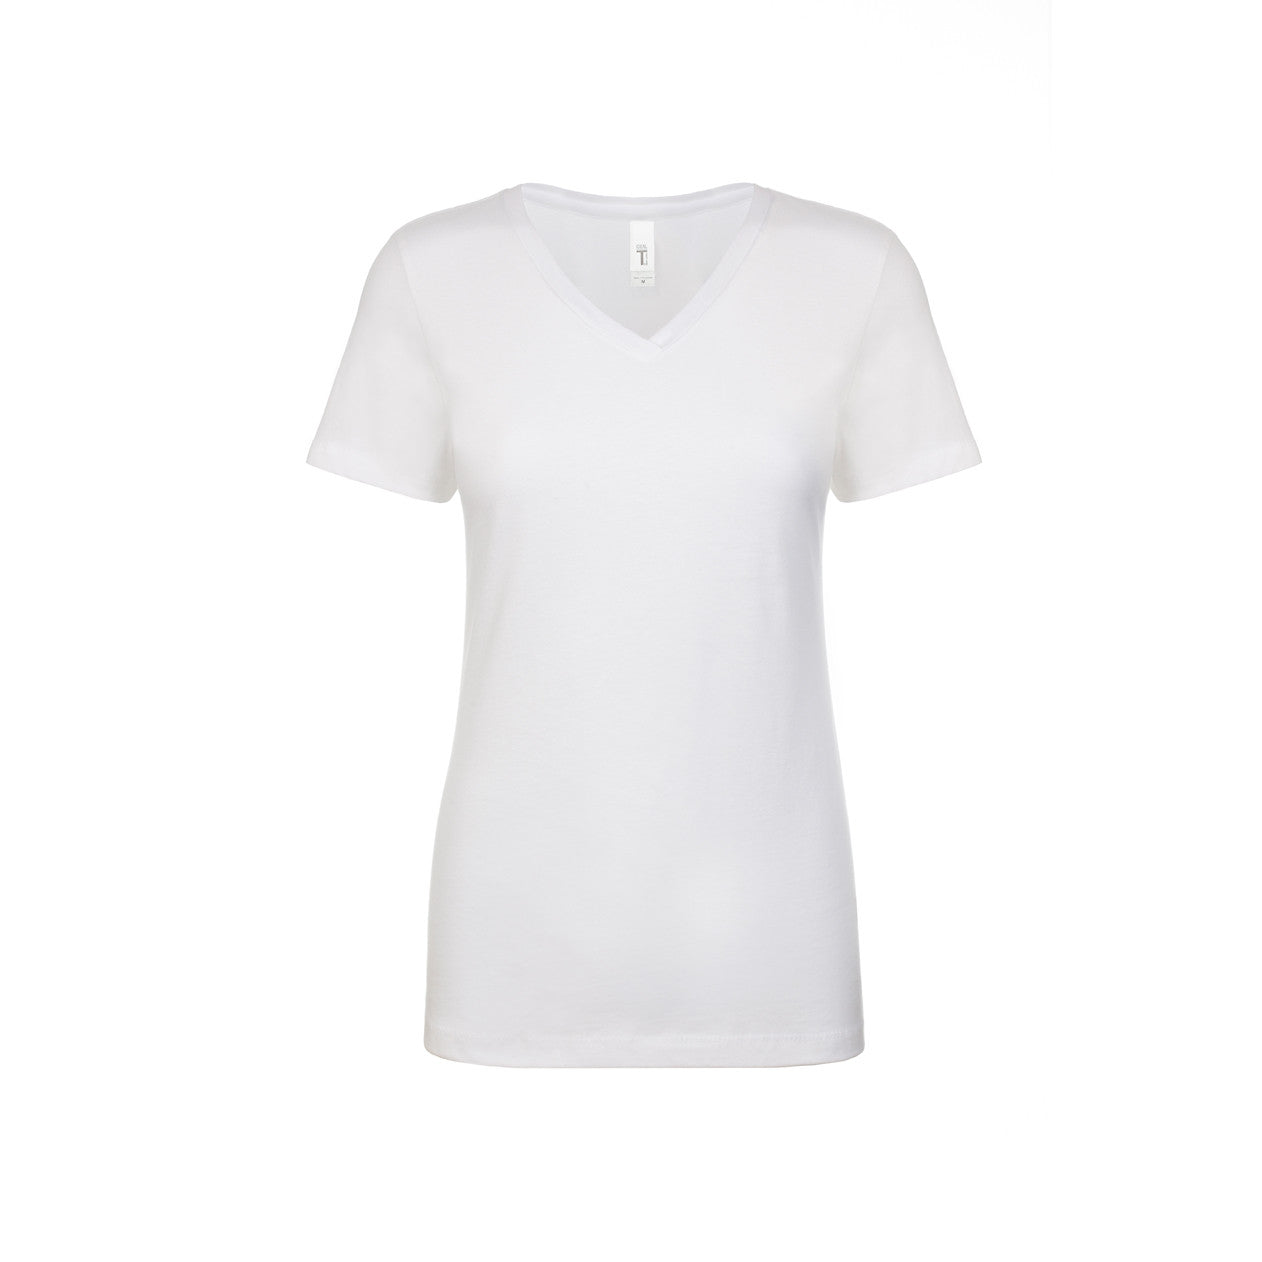 Women's Ideal V-Neck T-shirt - Next Level Australia